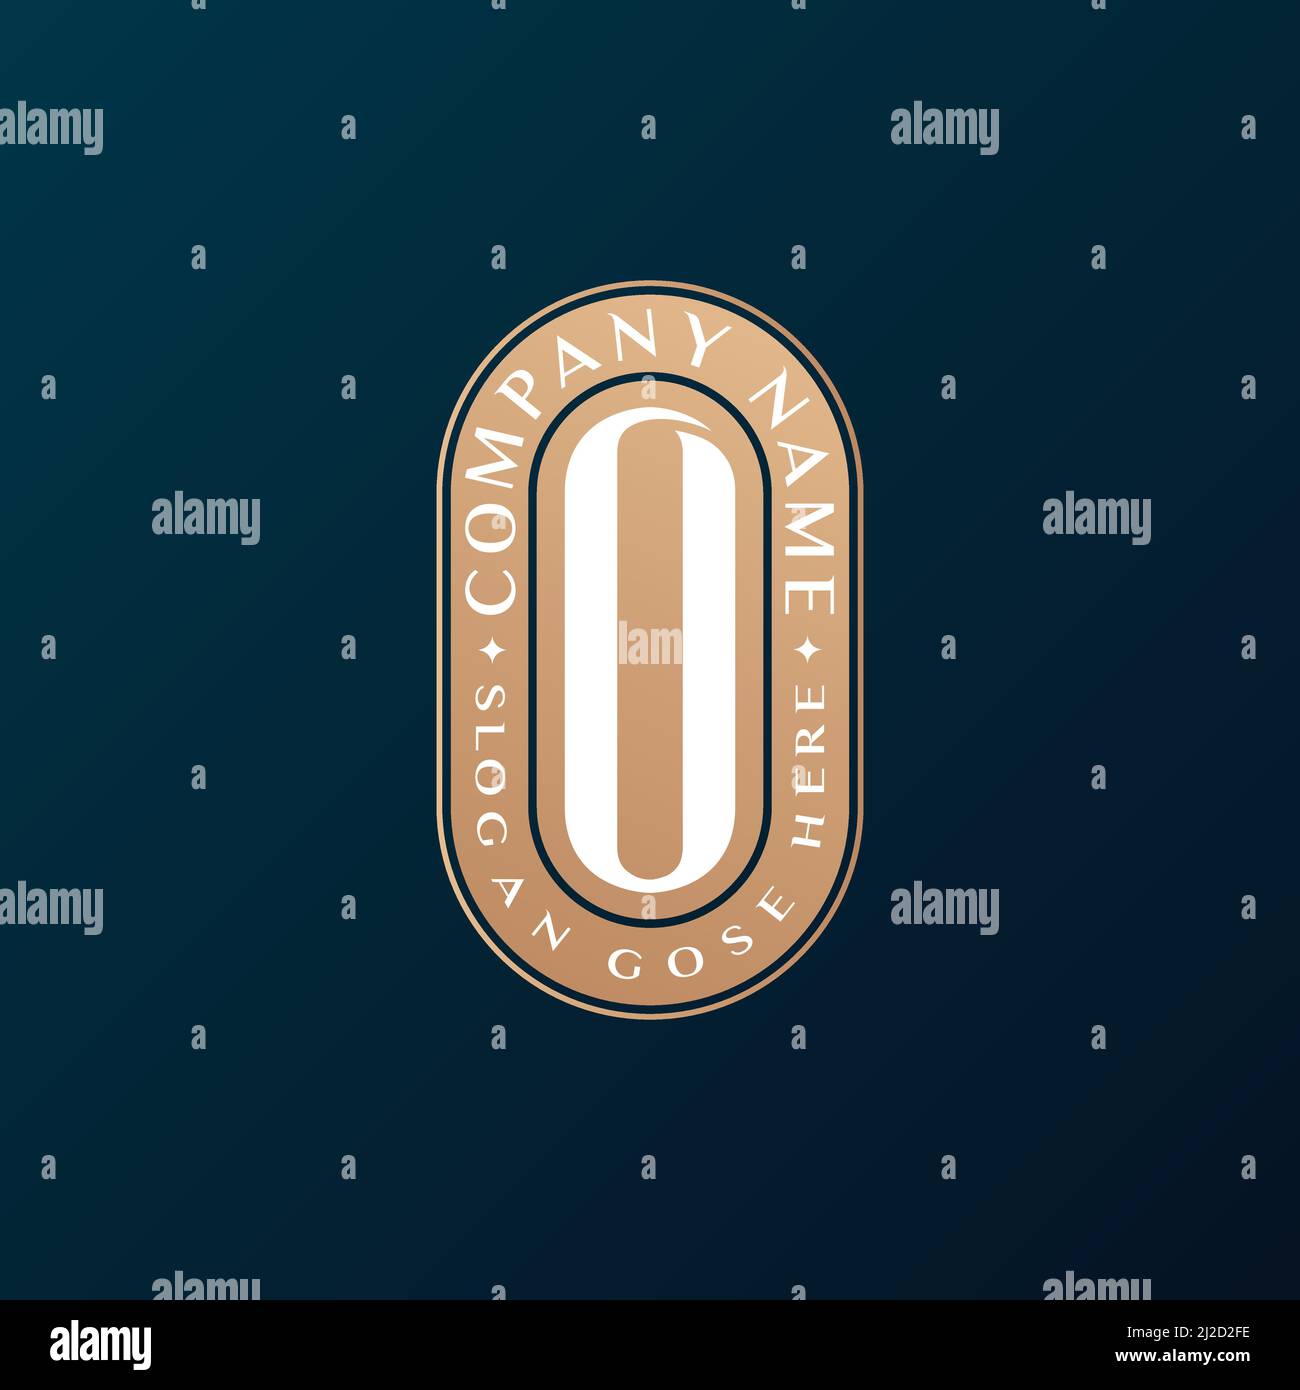 Abstrait Emblem Premium luxe identité d'entreprise élégant lettre O logo design Illustration de Vecteur